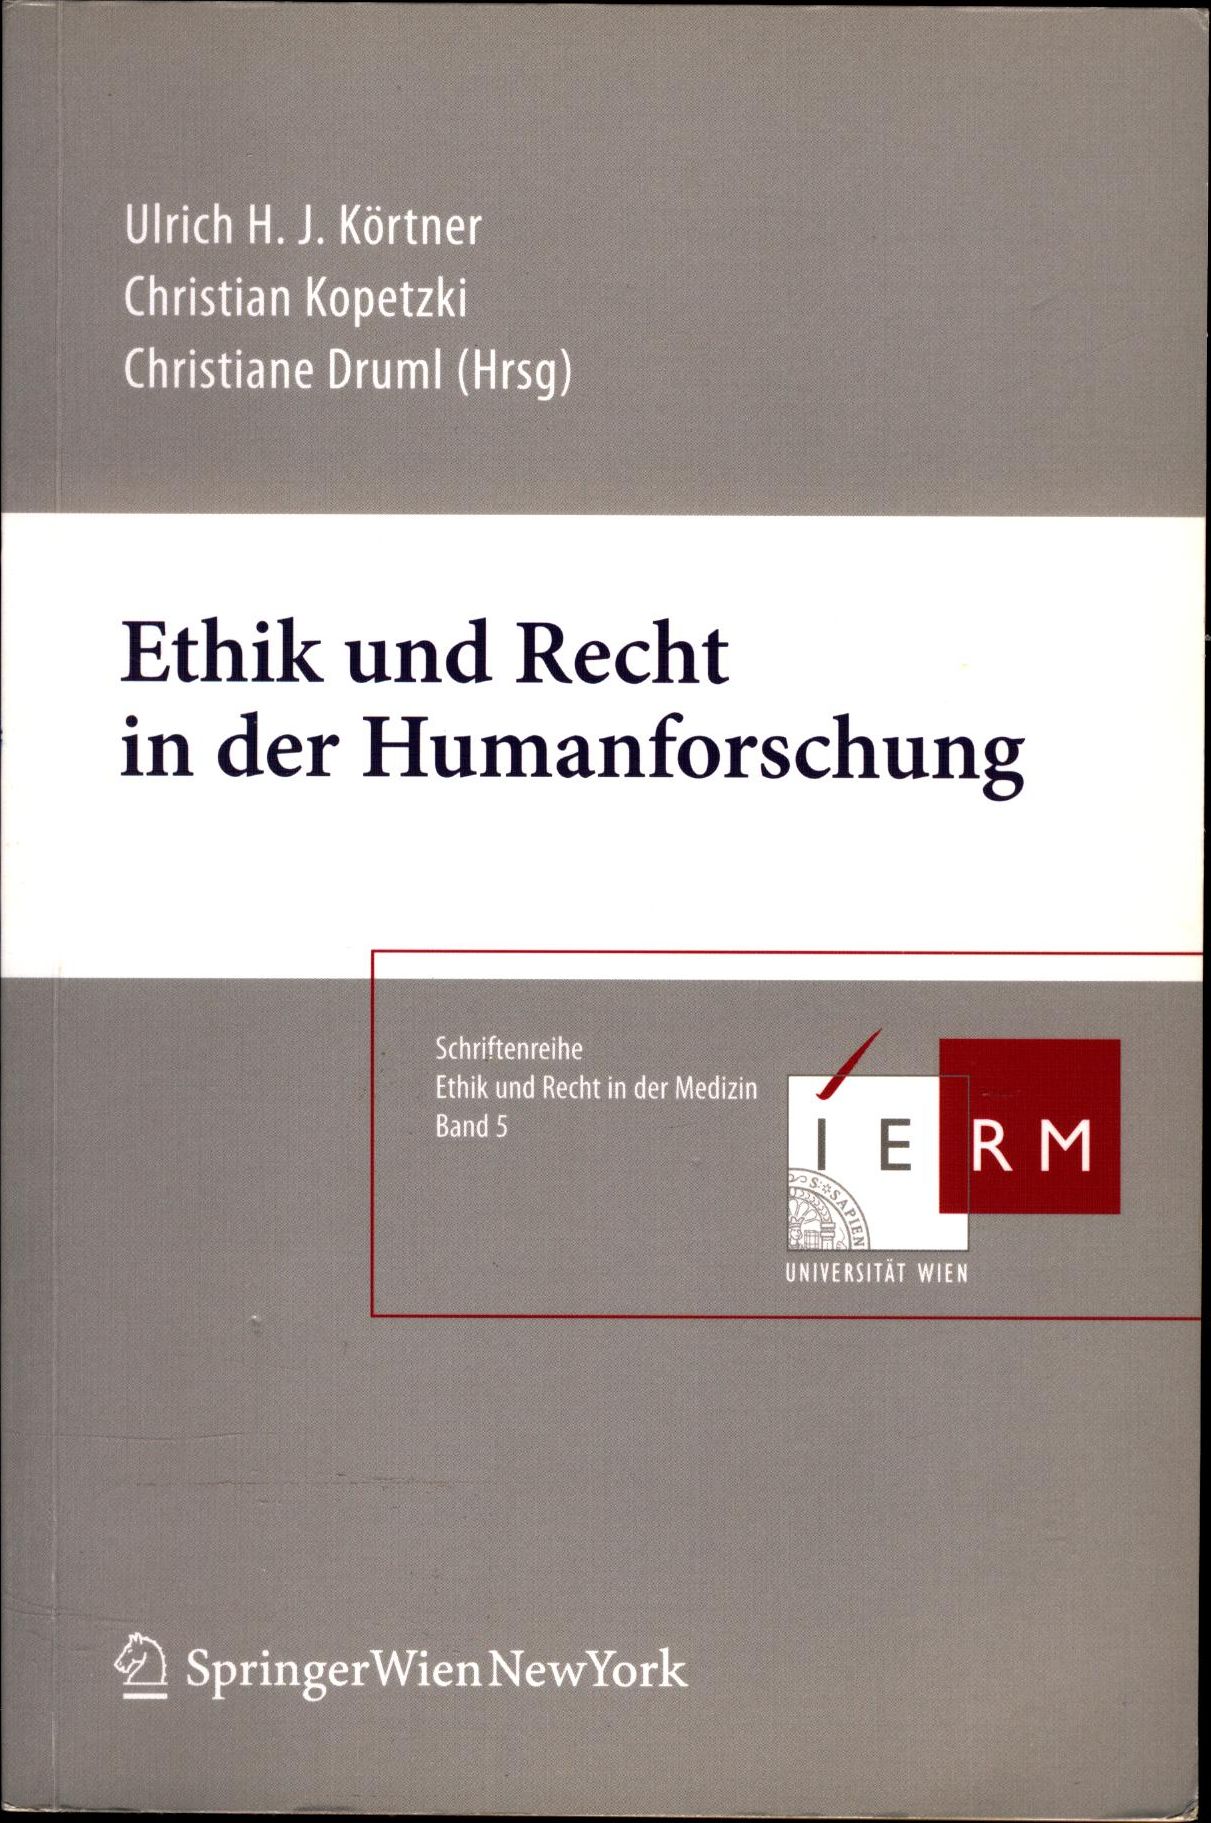 Ethik und Recht in der Humanforschung - Körtner, Ulrich H.J., Christian Kopetzki und Christiane Druml